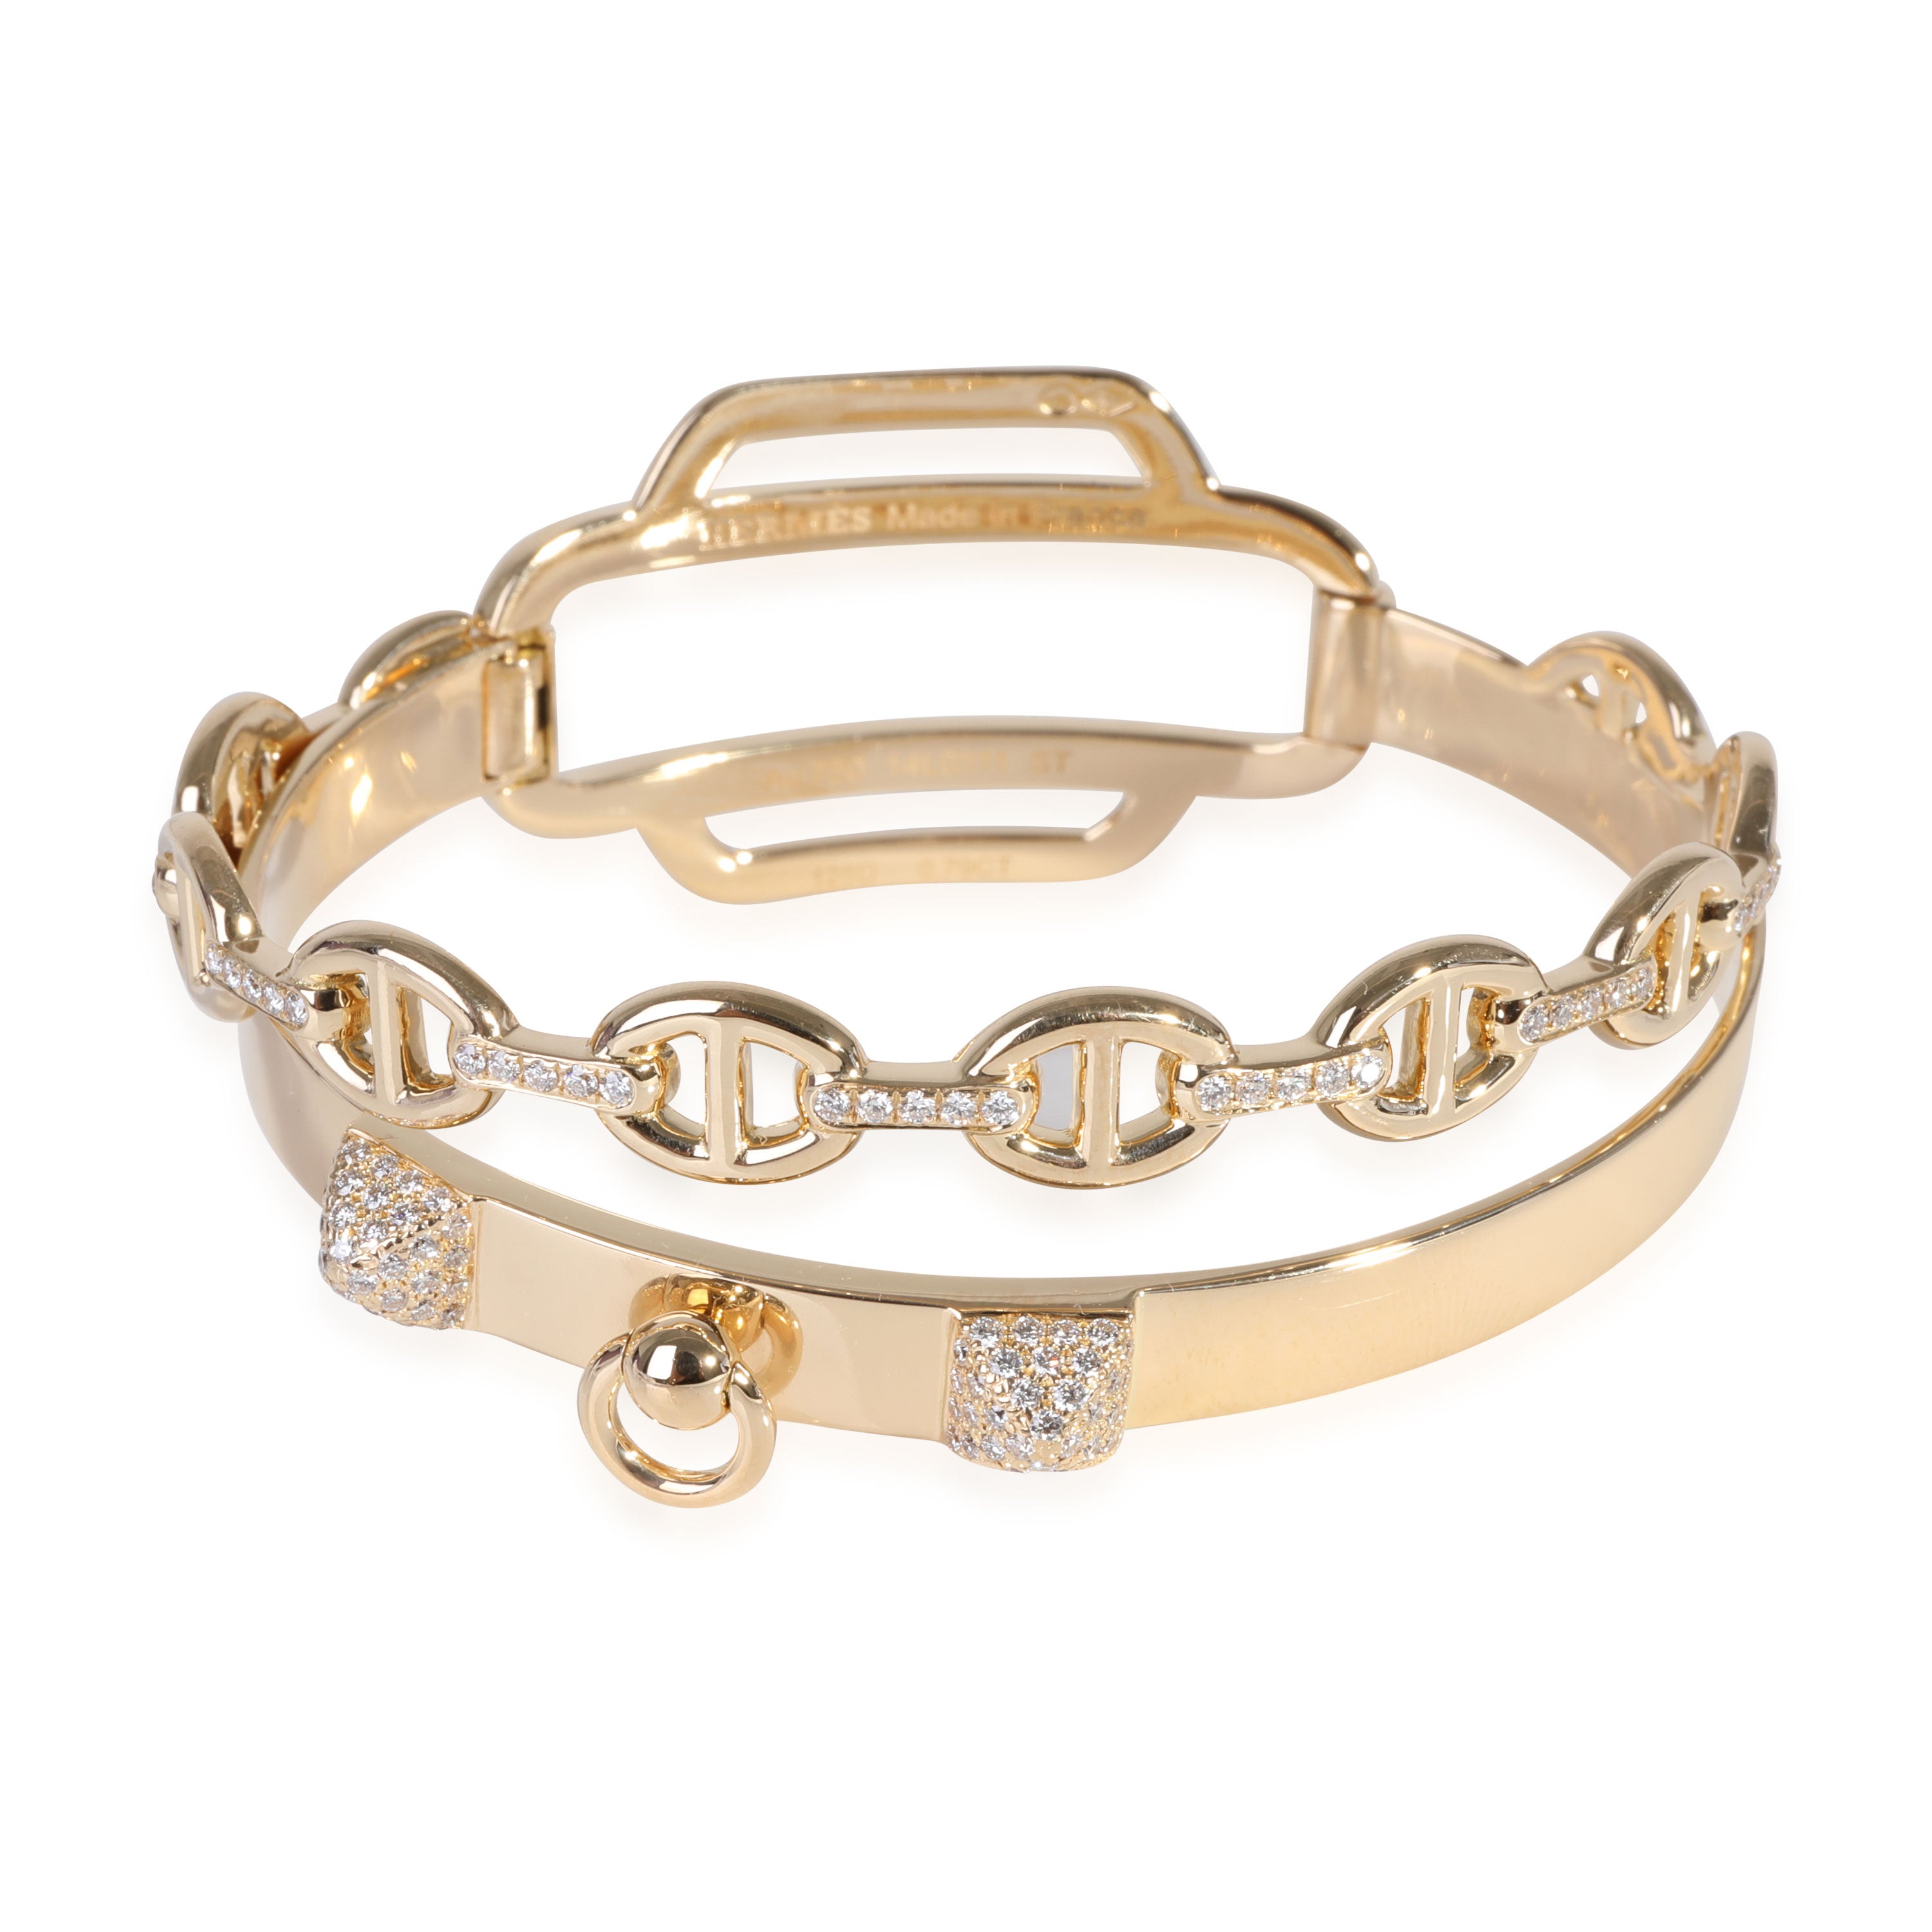 Collier de Chien bracelet, small model | Hermès UK